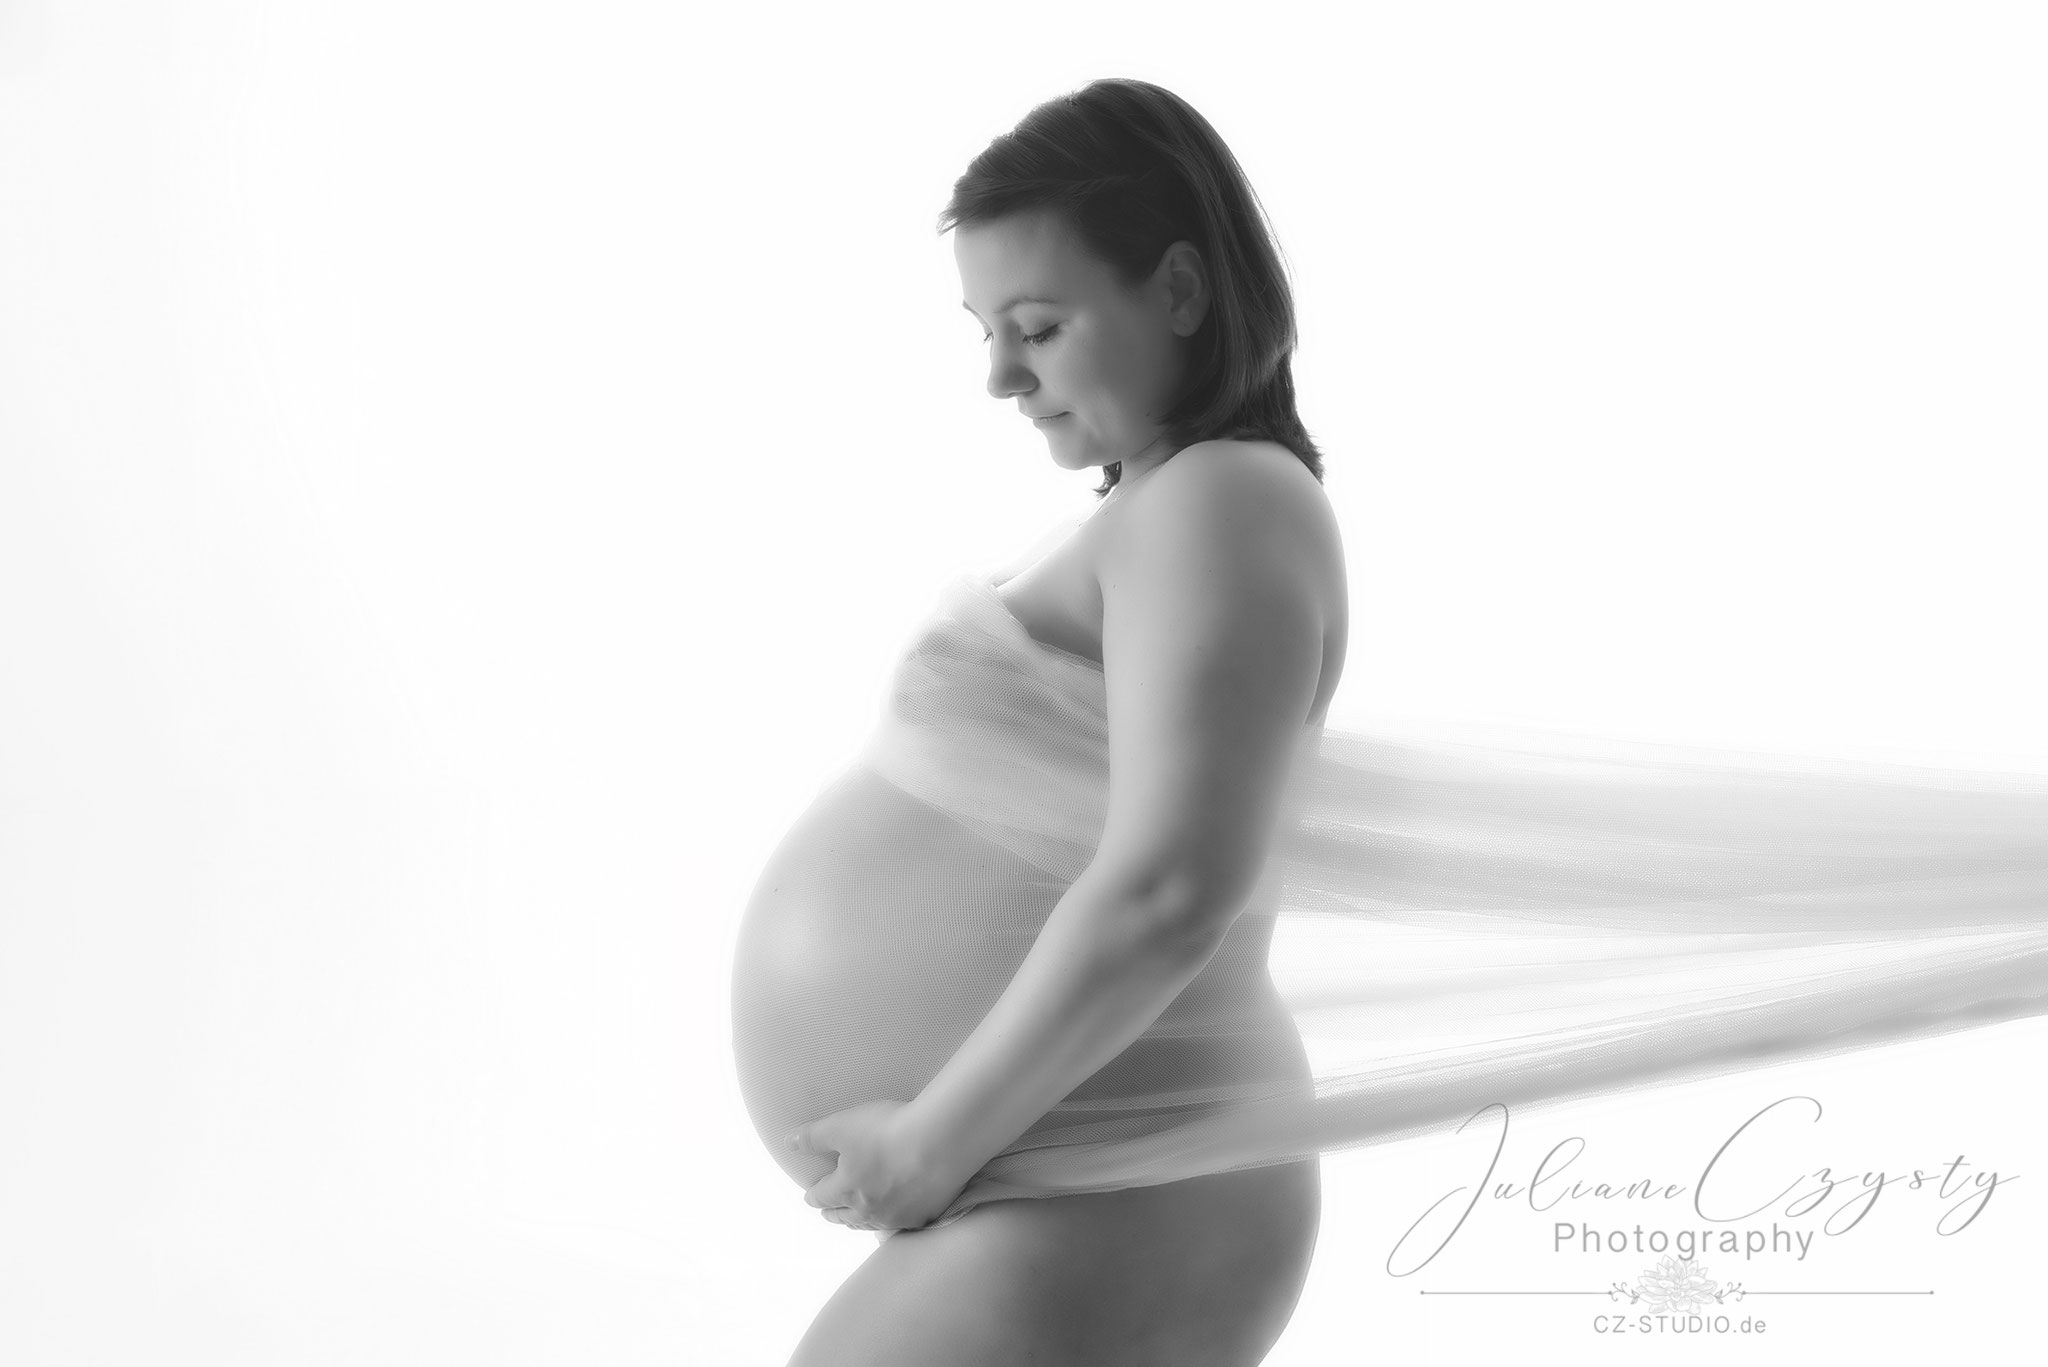  Schwangerschaftsfotos– Juliane Czysty, Fotostudio in Visselhövede